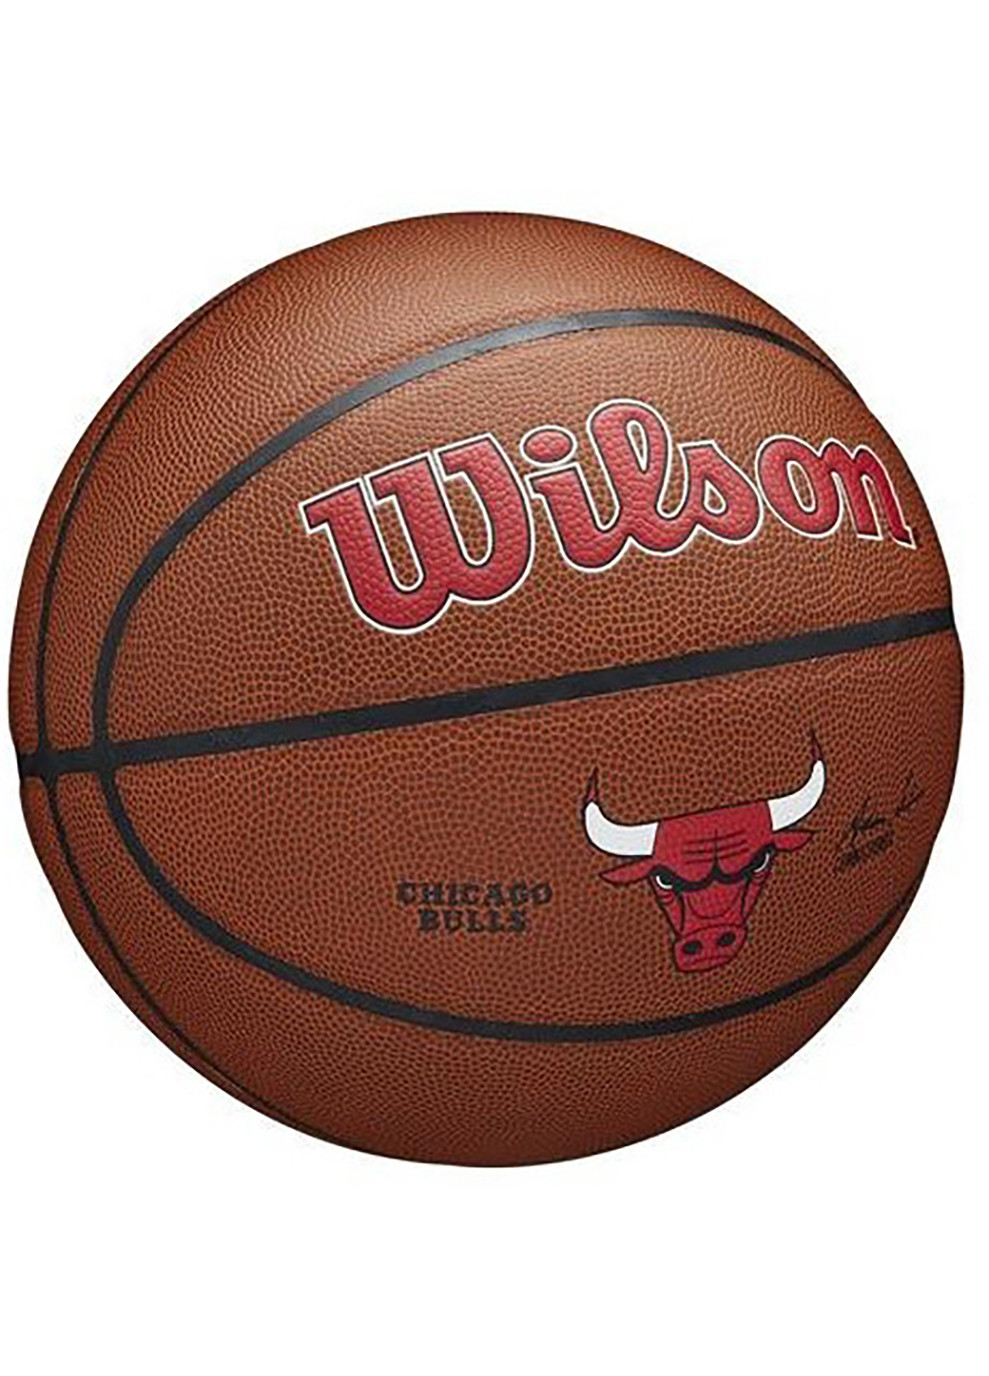 Мяч баскетбольный NBA Team Composite Chicago Bulls Size 7 (WTB3100XBCHI) Wilson (253677901)